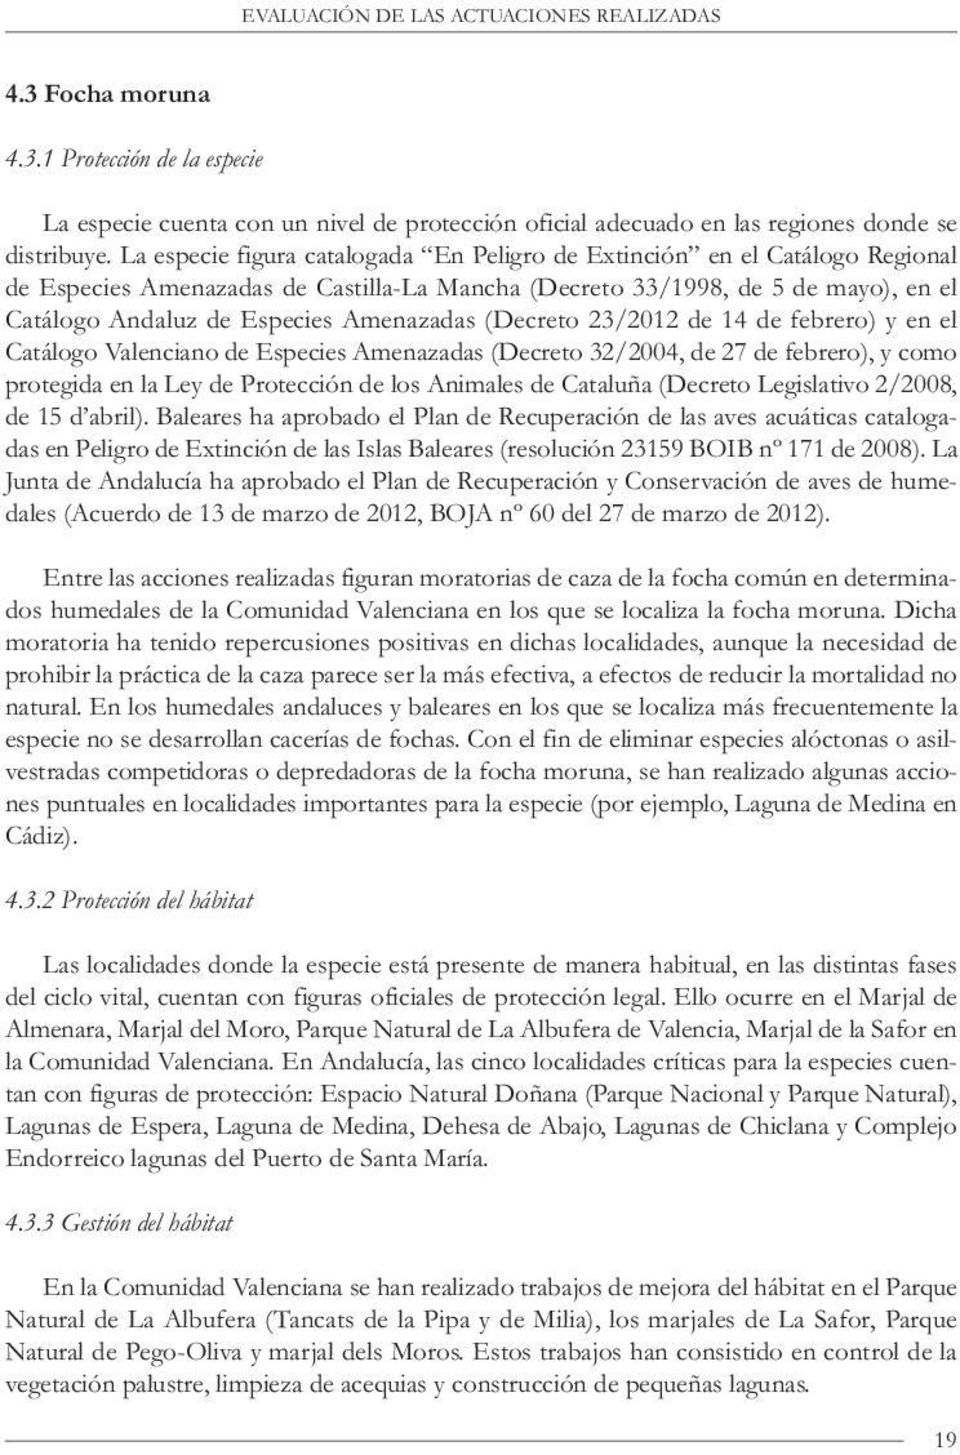 Amenazadas (Decreto 23/2012 de 14 de febrero) y en el Catálogo Valenciano de Especies Amenazadas (Decreto 32/2004, de 27 de febrero), y como protegida en la Ley de Protección de los Animales de